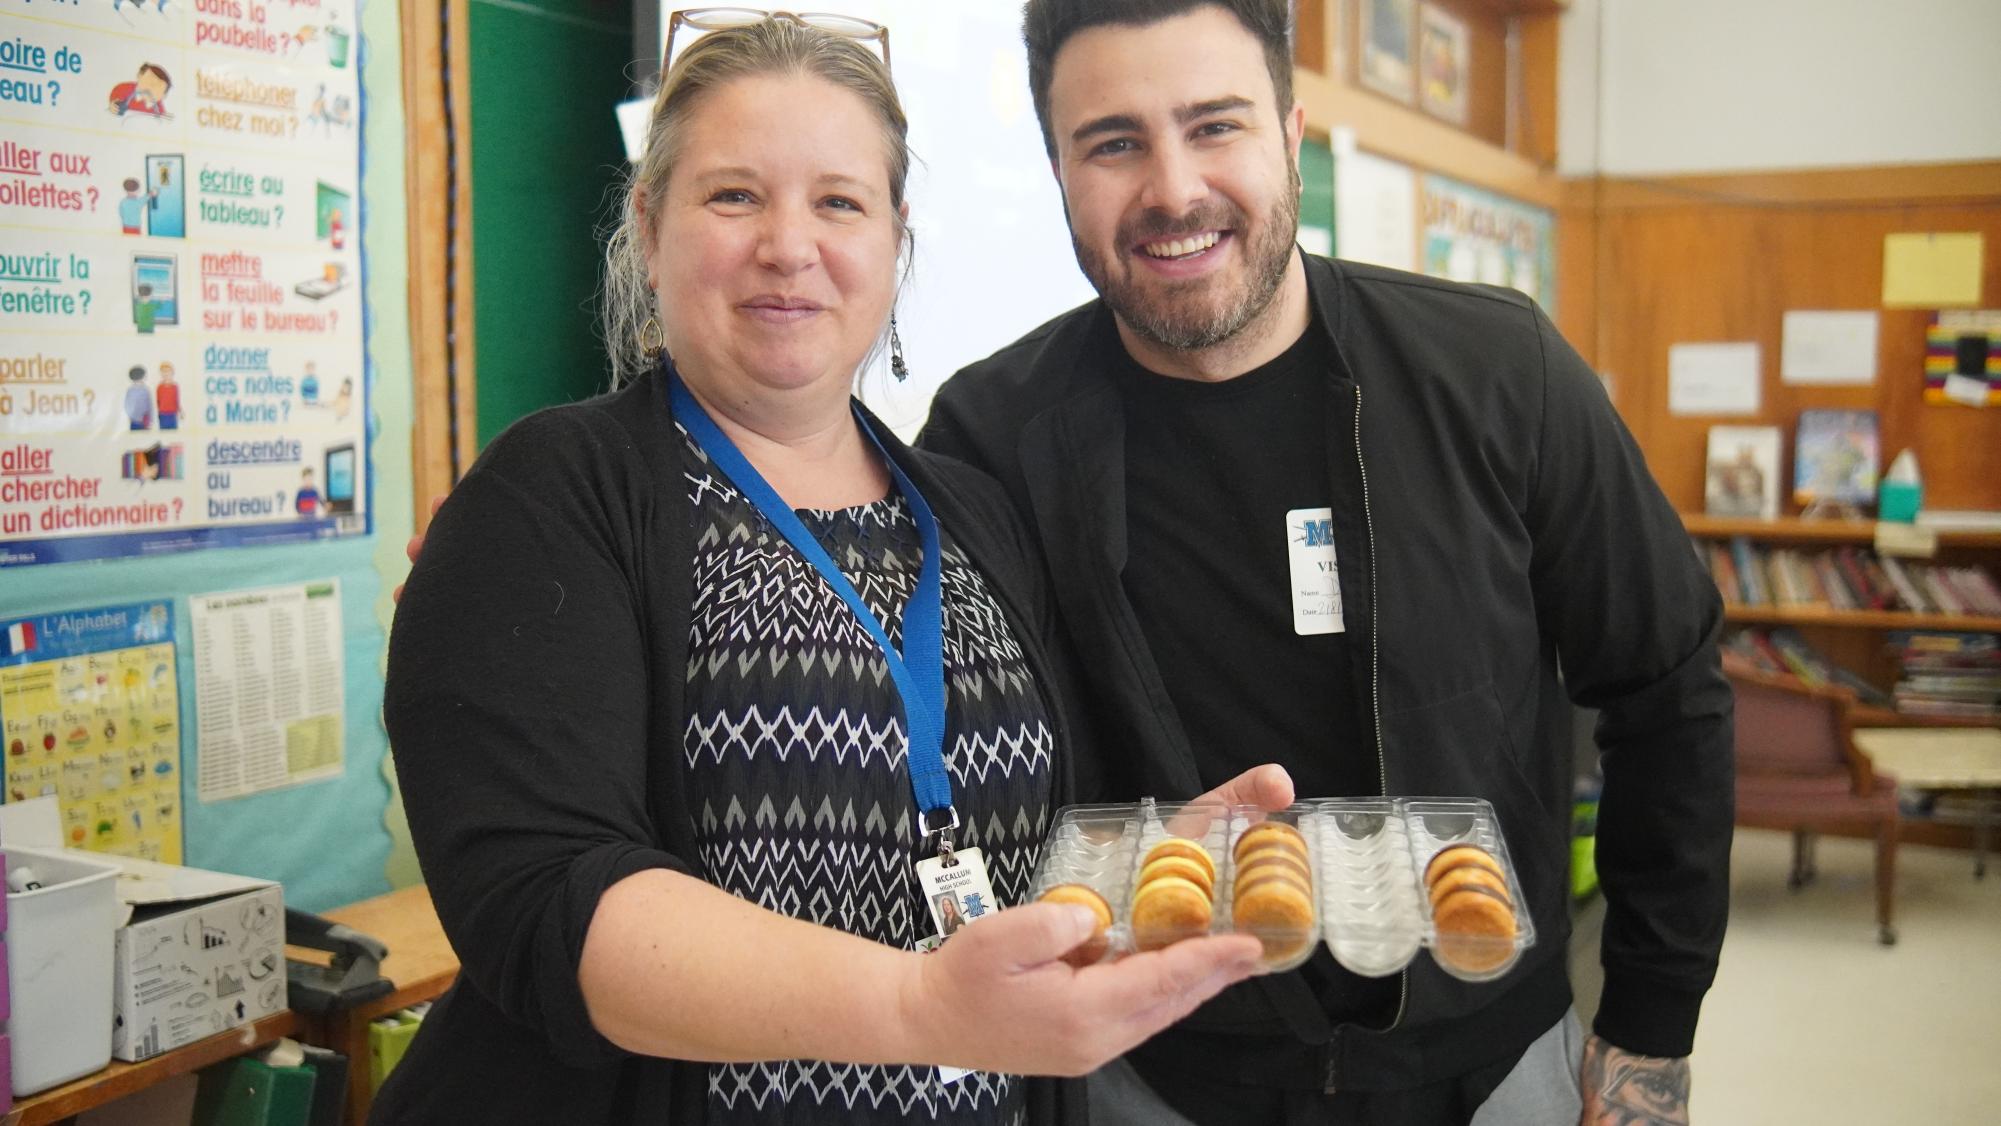 La professeure de français Charlotte Favrin et le chef invité Kevin dAndrea posent avec les délices desserts quil a apportés à la classe. La classe communiquait avec lui principalement en français.
